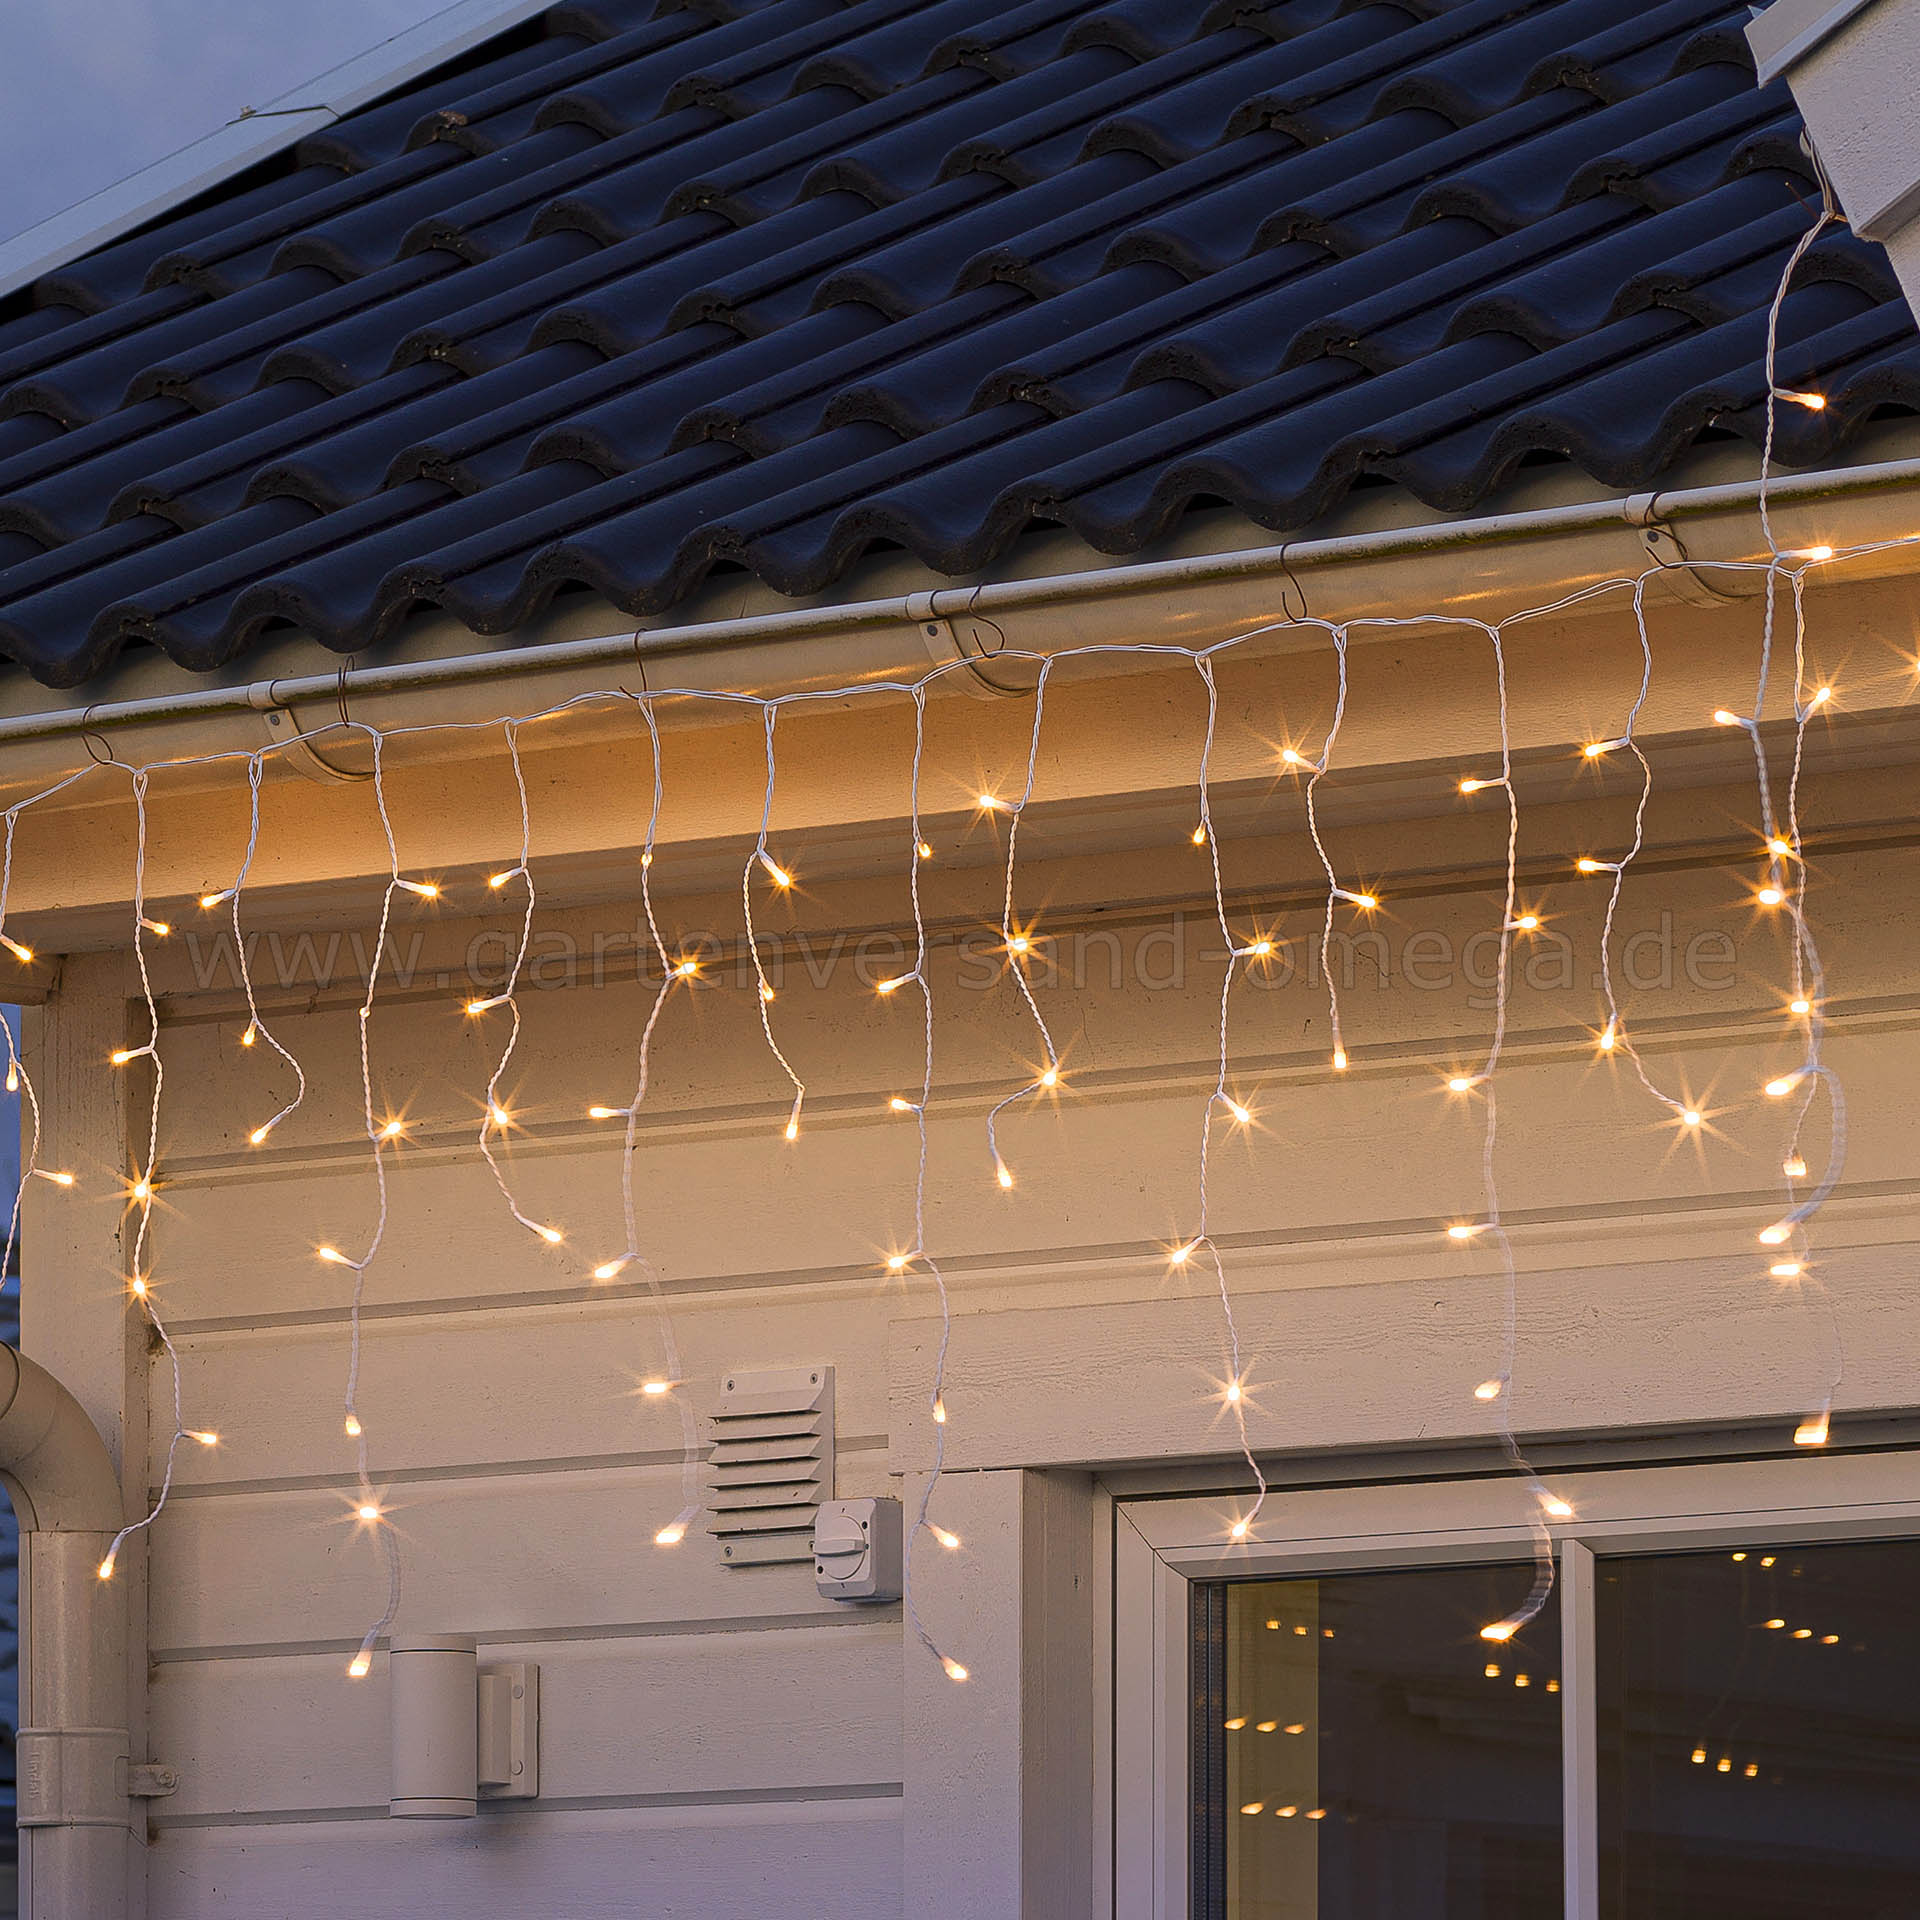 Dachrinnenlichterkette, warme Eisregenvorhang - Lichterkettenvorhang, Lichterkette LED-Lichtvorhang gefrostet Dachrinnen, Glimmereffekt für Weihnachtsaußenbeleuchtung Lichtfarbe, LED Eisregen-Lichterkette, Lichteffekt, Lichtervorhang blinkend